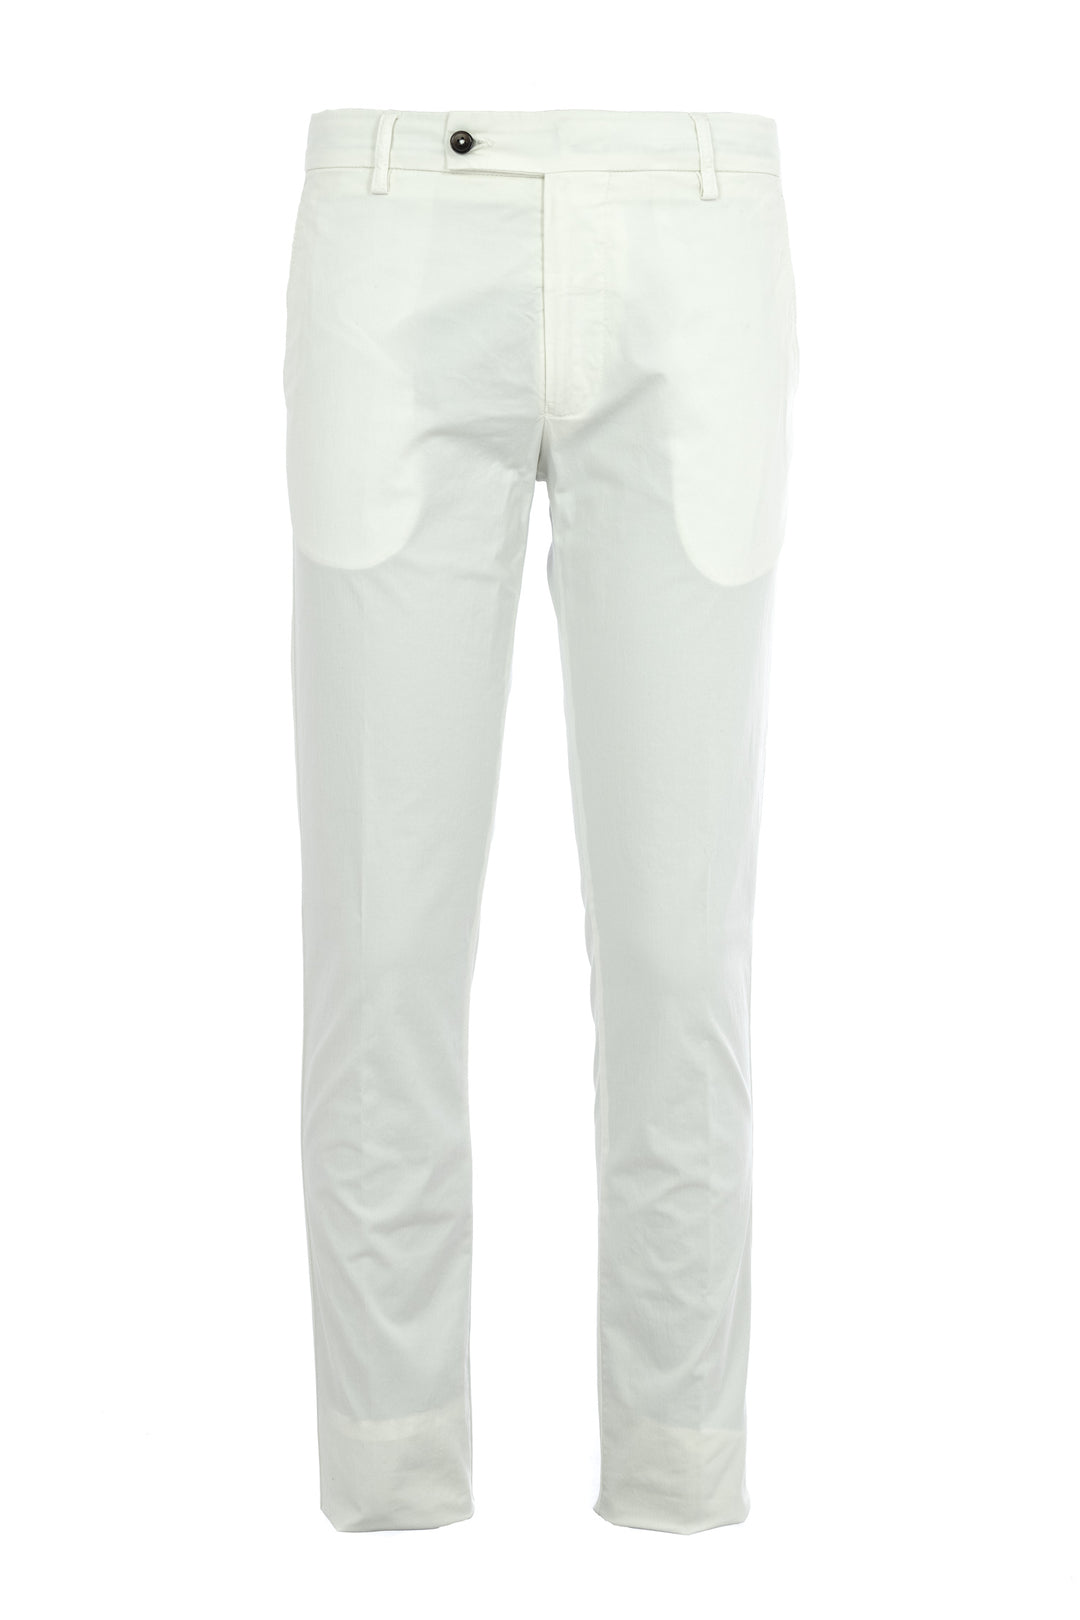 BERWICH Pantalone slim in gabardina di cotone stretch bianco panna - Mancinelli 1954